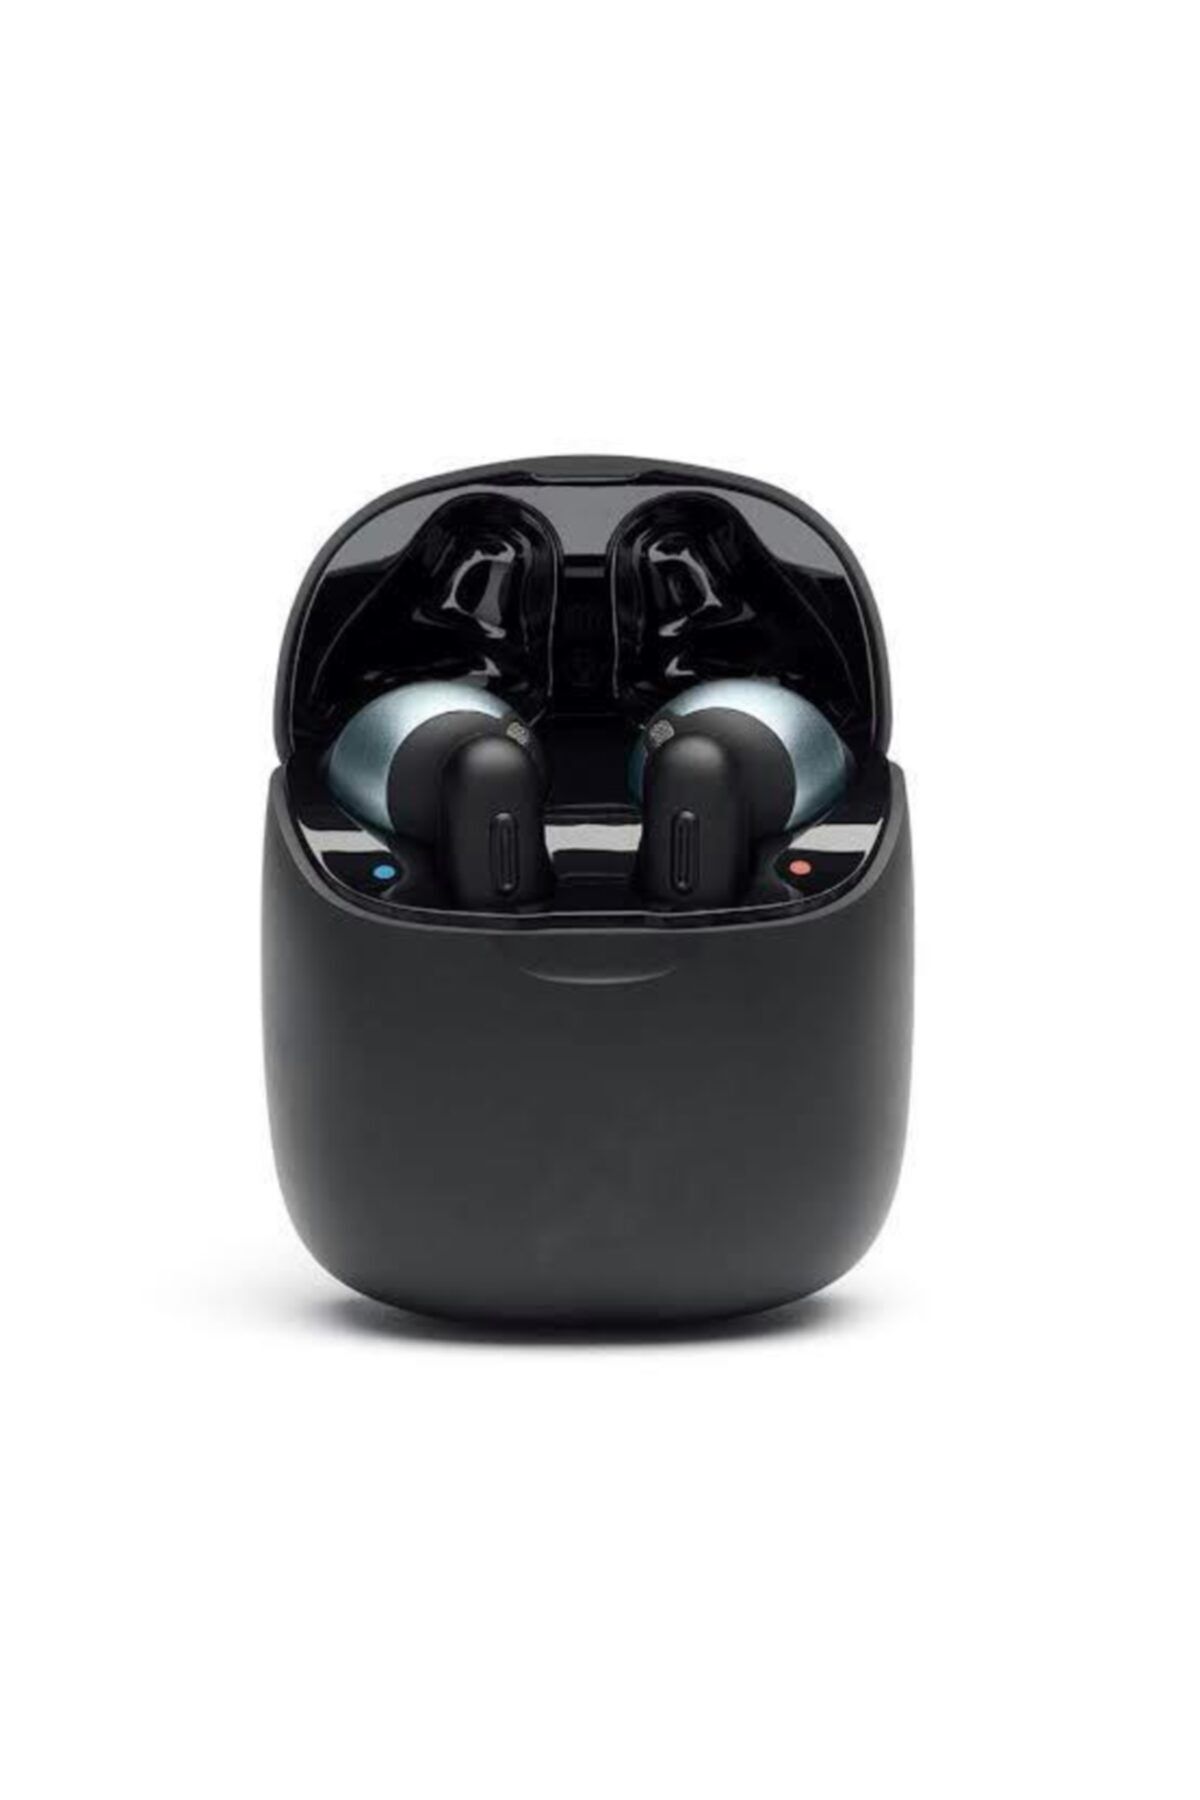 SANALİNK T220 Tws Kablosuz Kulak Içi Bluetooth Kulaklık – Siyah